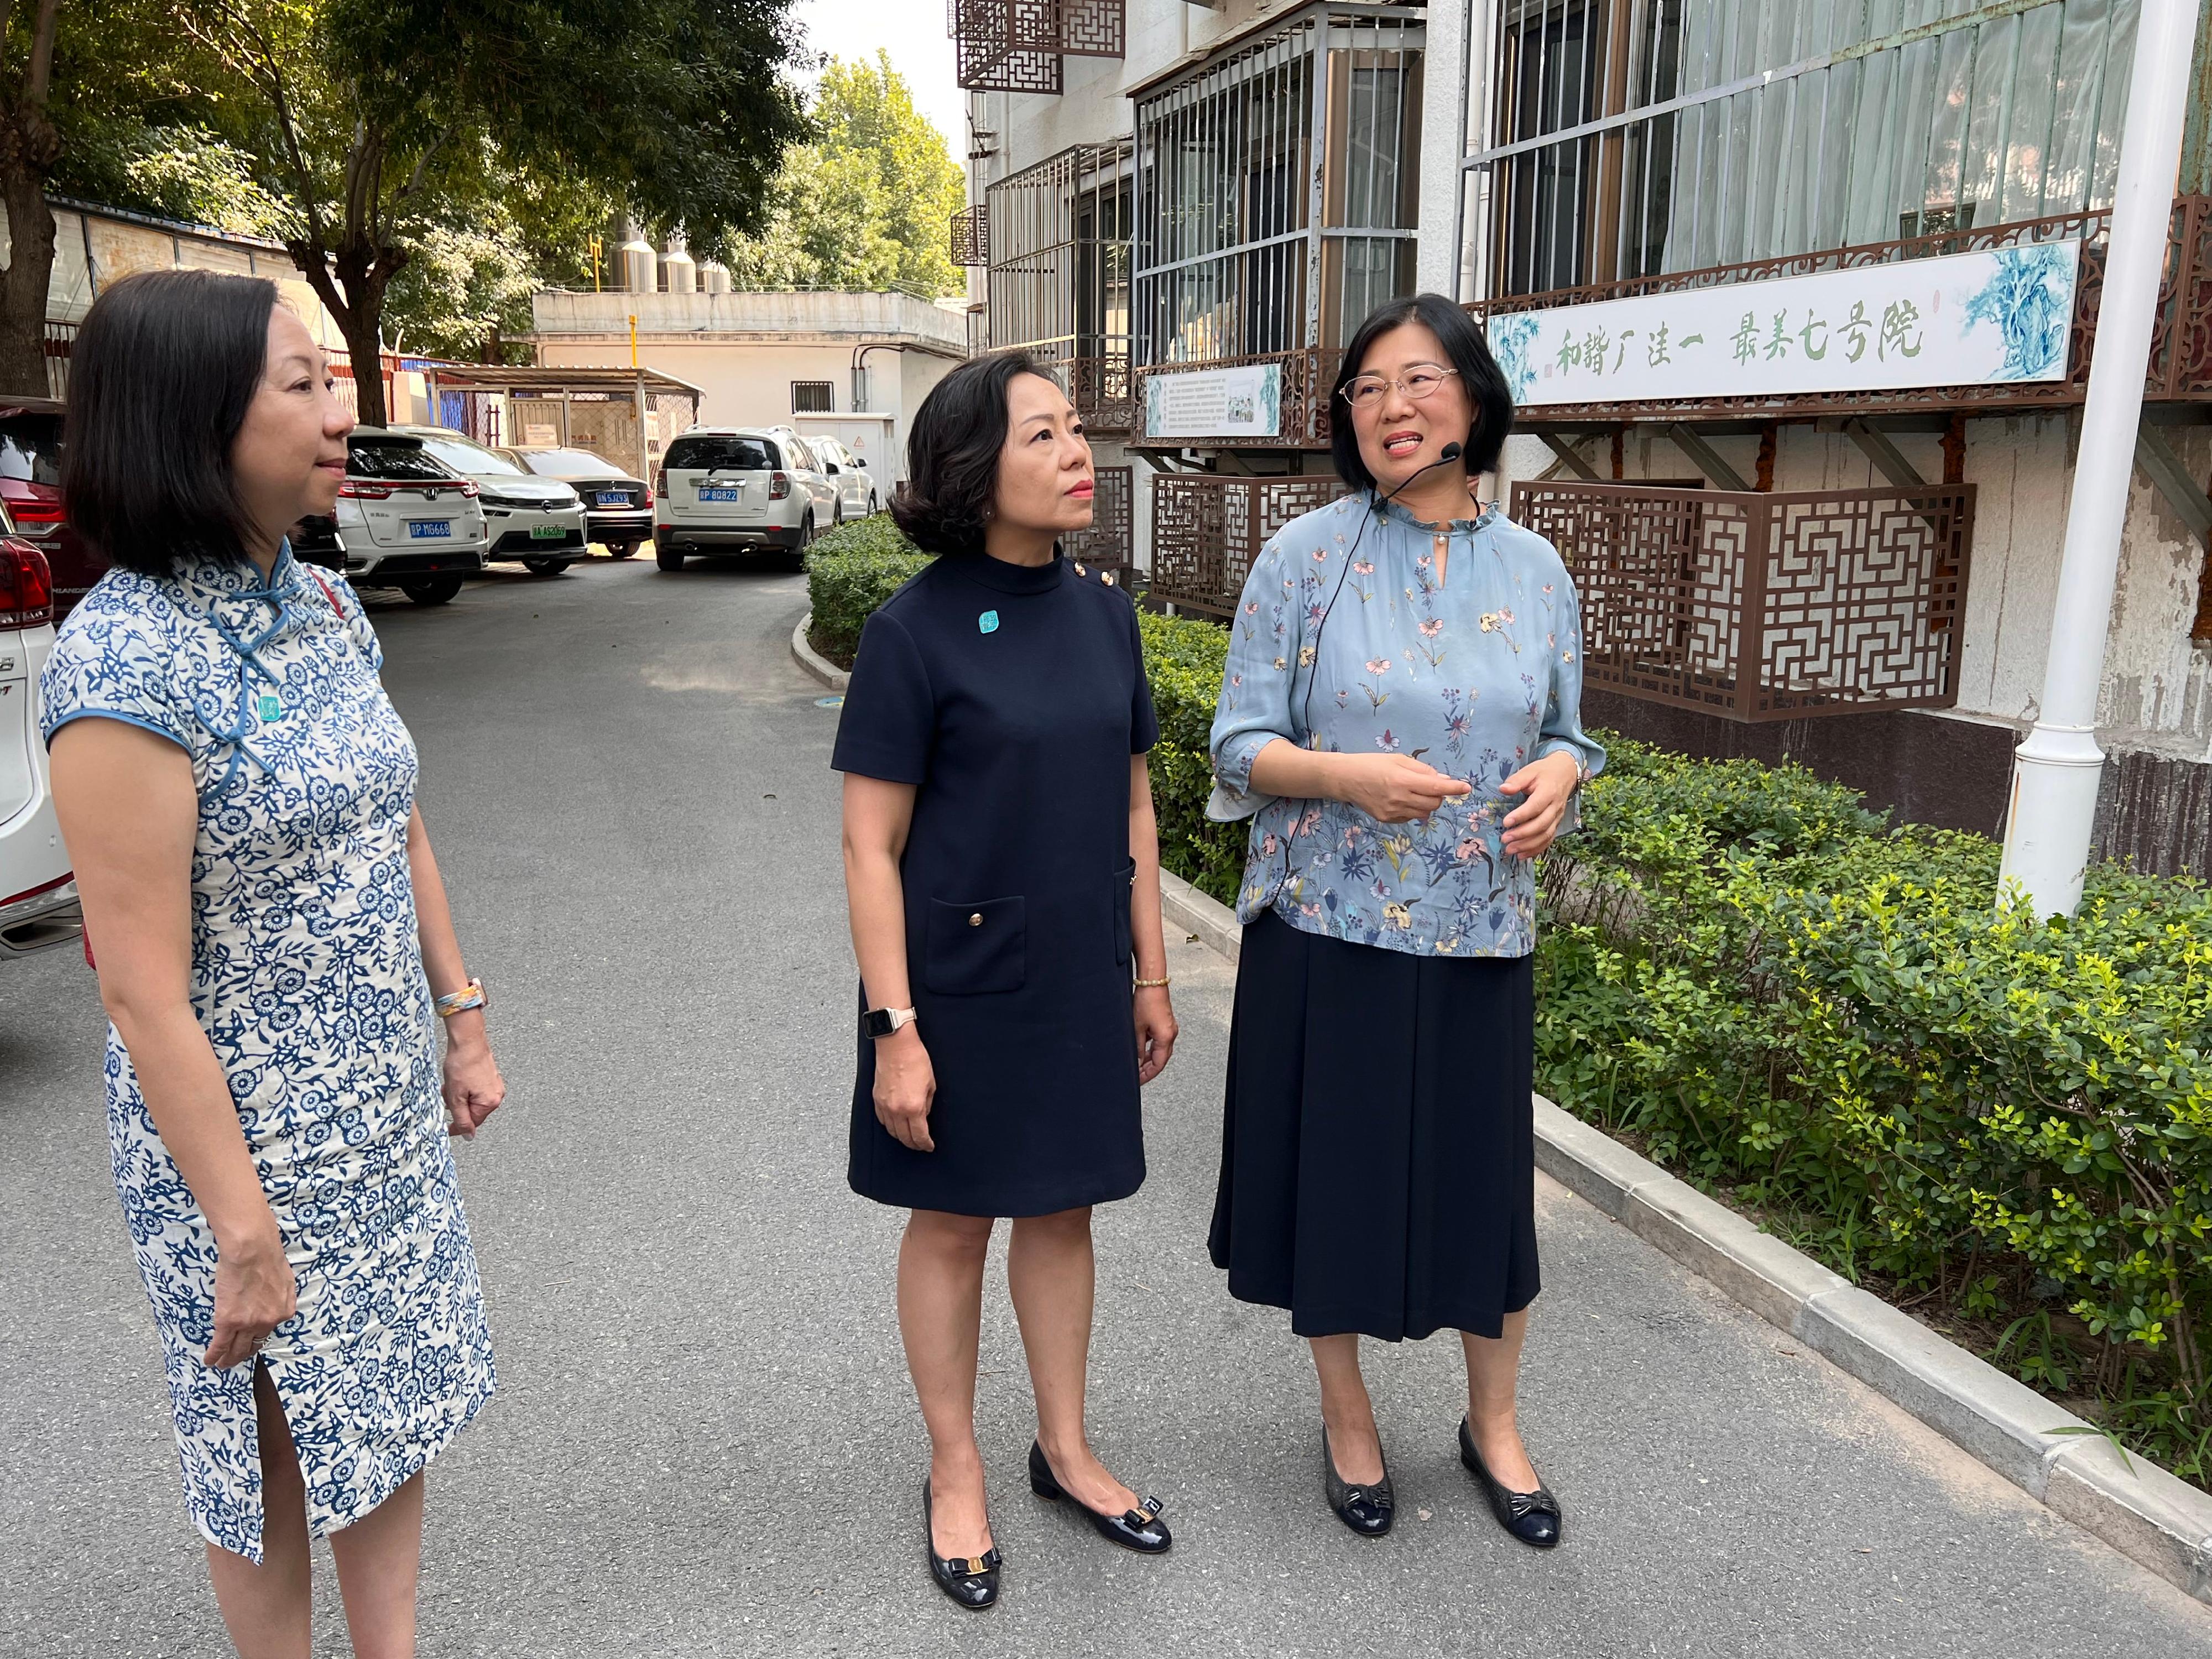 民政及青年事務局（民青局）局長麥美娟今日（七月十八日）繼續在北京的訪問行程。圖示麥美娟（中）和民青局常任秘書長林雪麗（左）參觀紫竹院街道。
